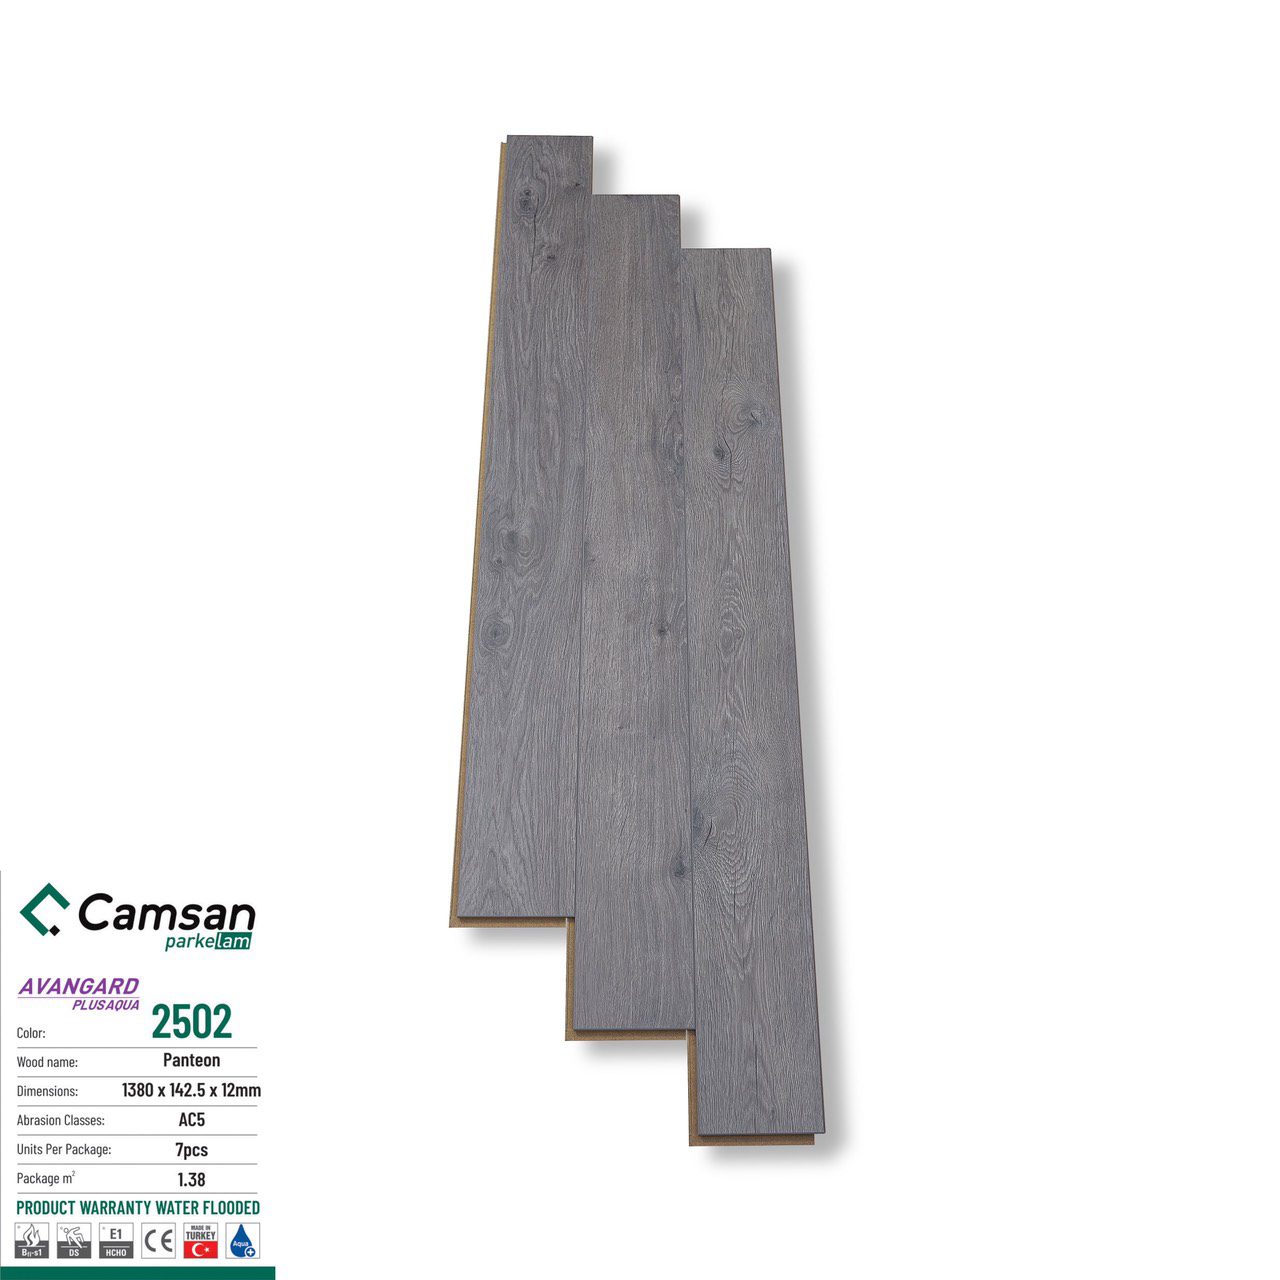 Sàn gỗ Camsan 2502